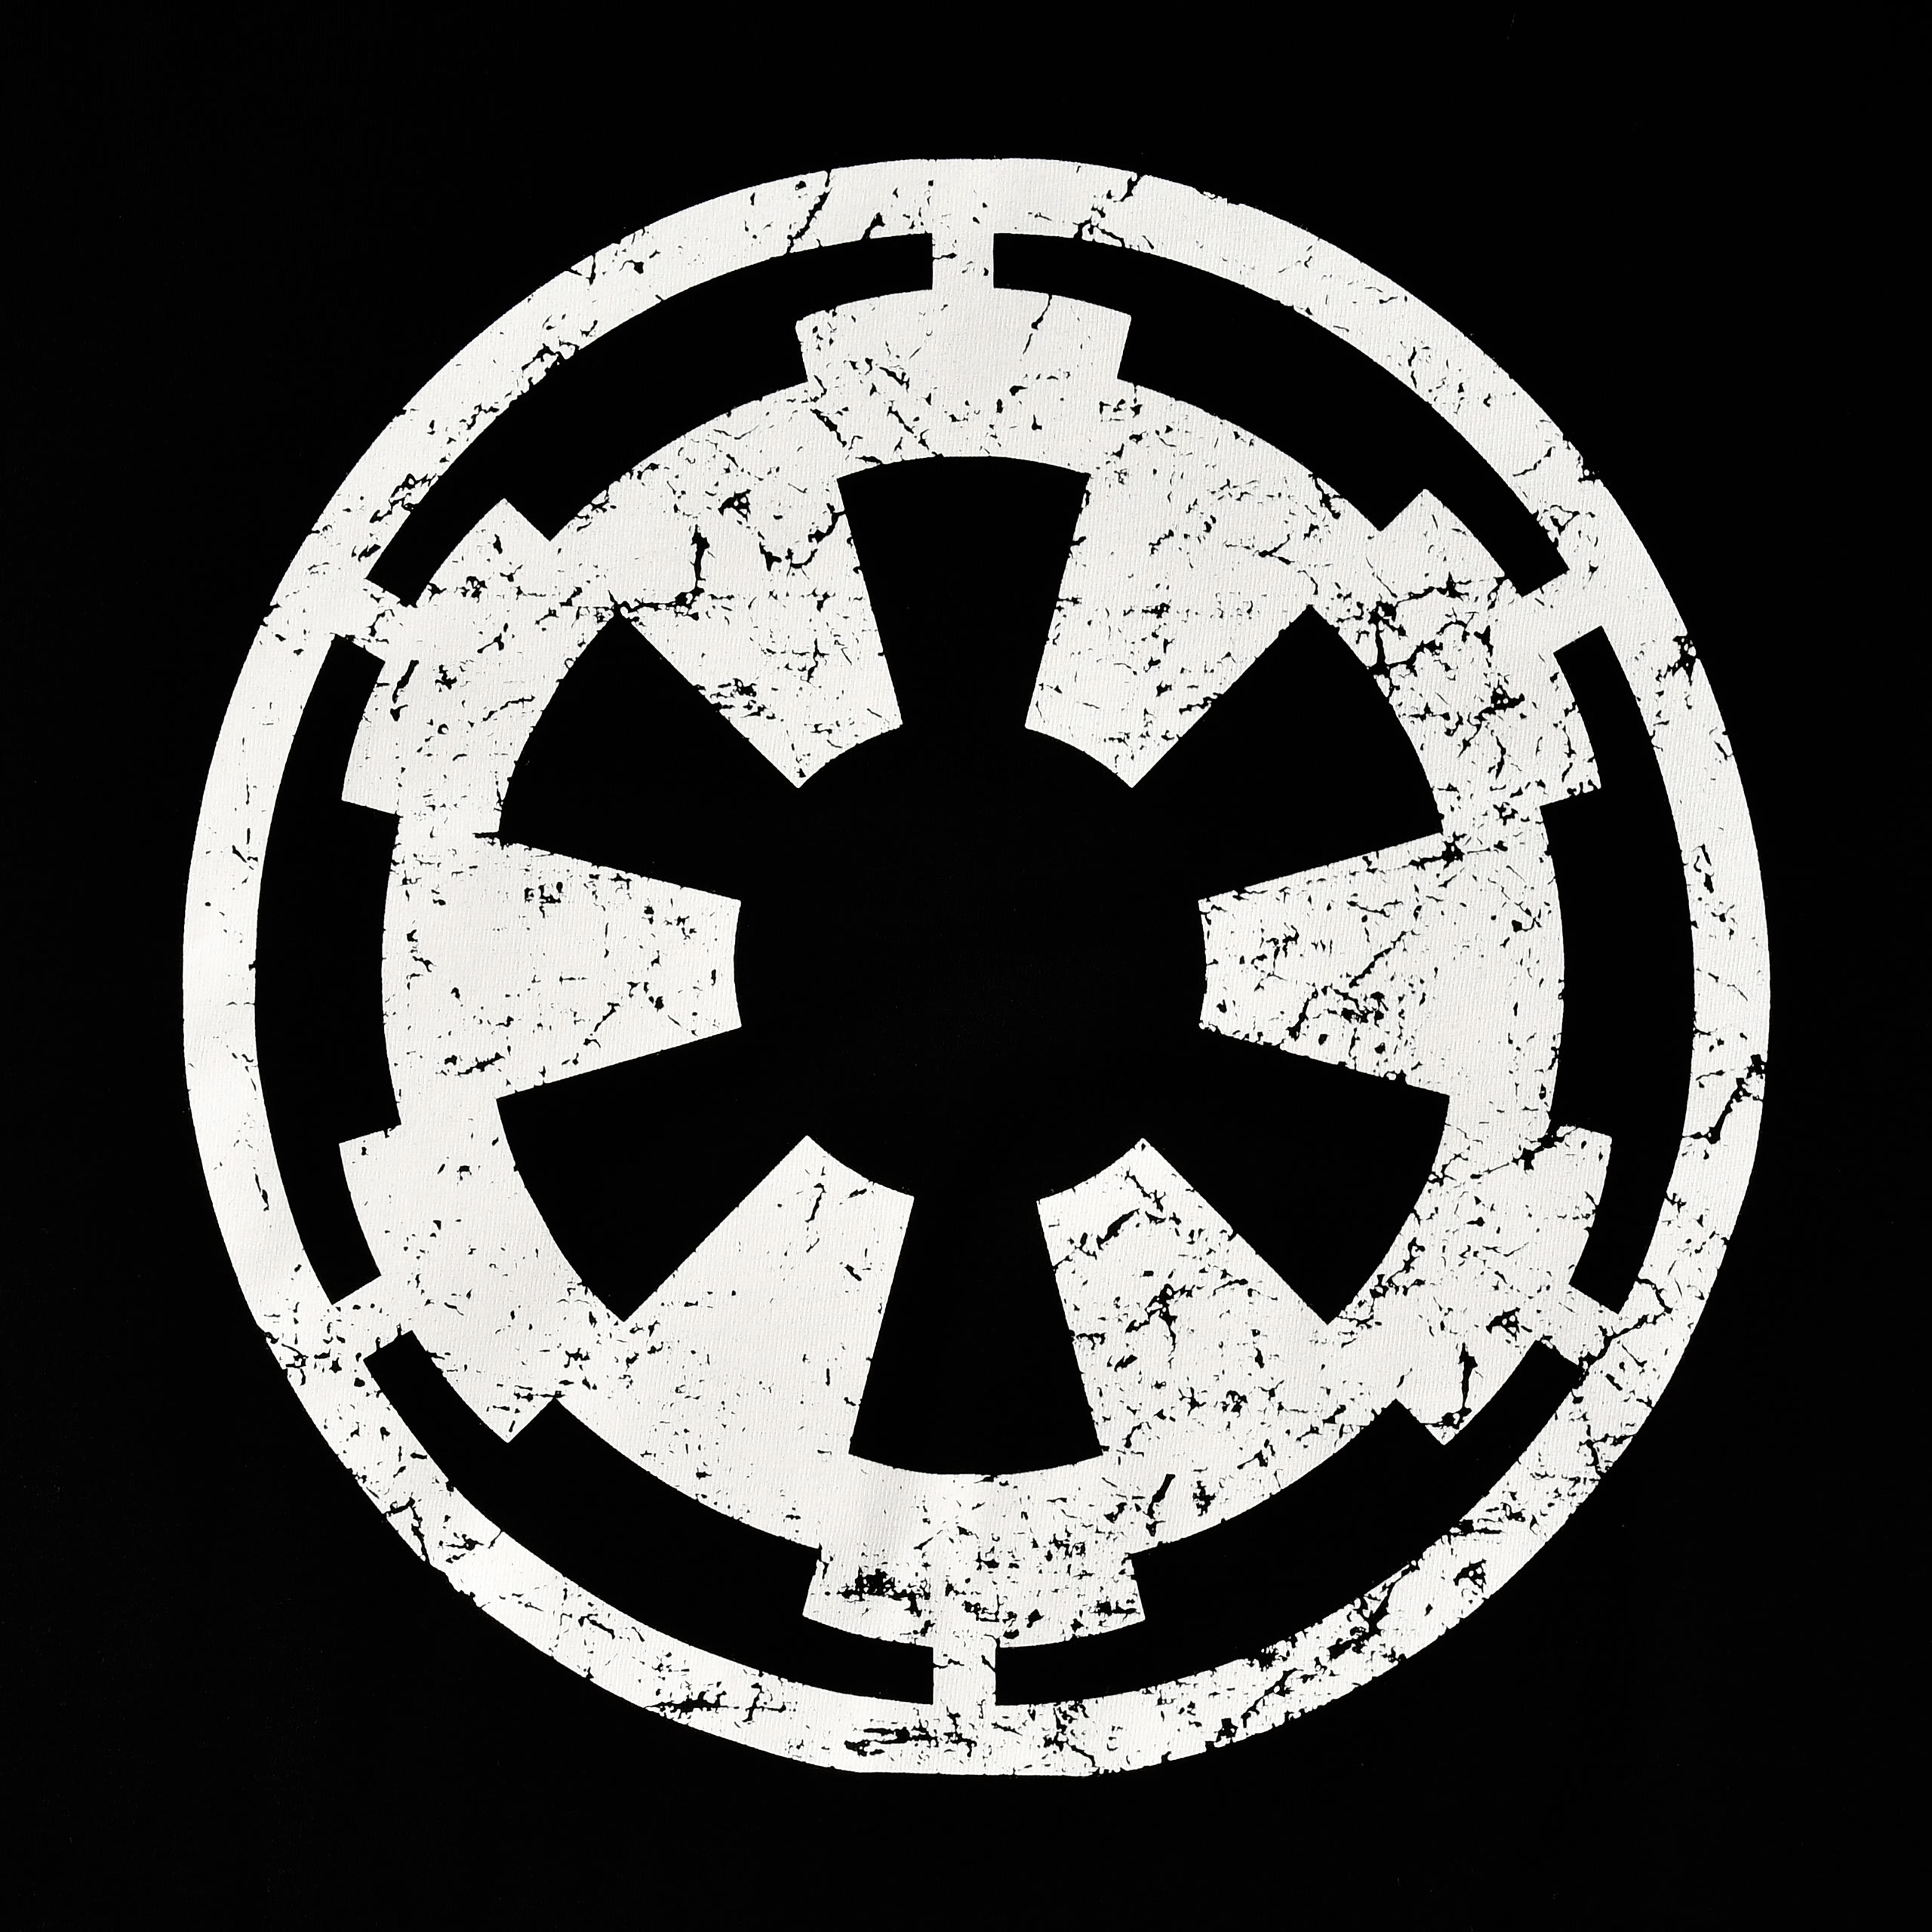 Imperium Logo T-Shirt schwarz - Star Wars Andor